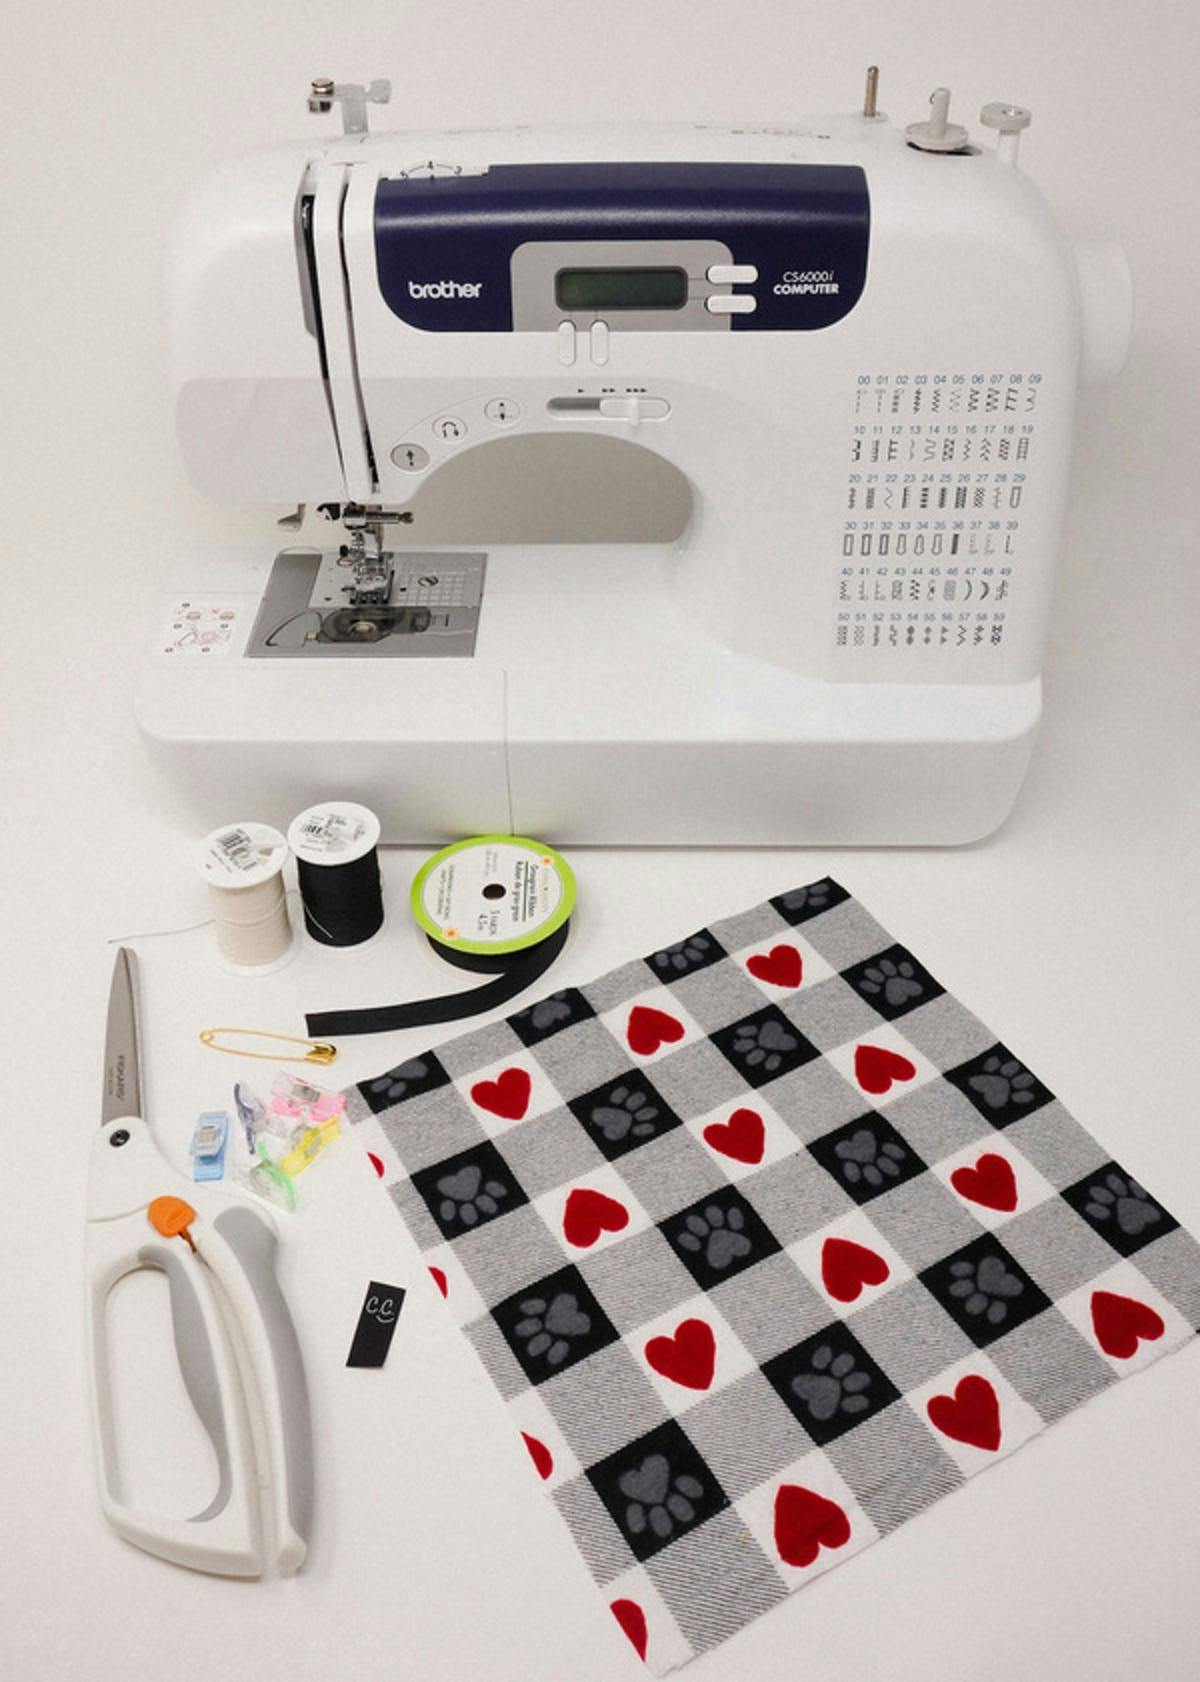  máquina de coser y accesorios para coser un pañuelo para perro